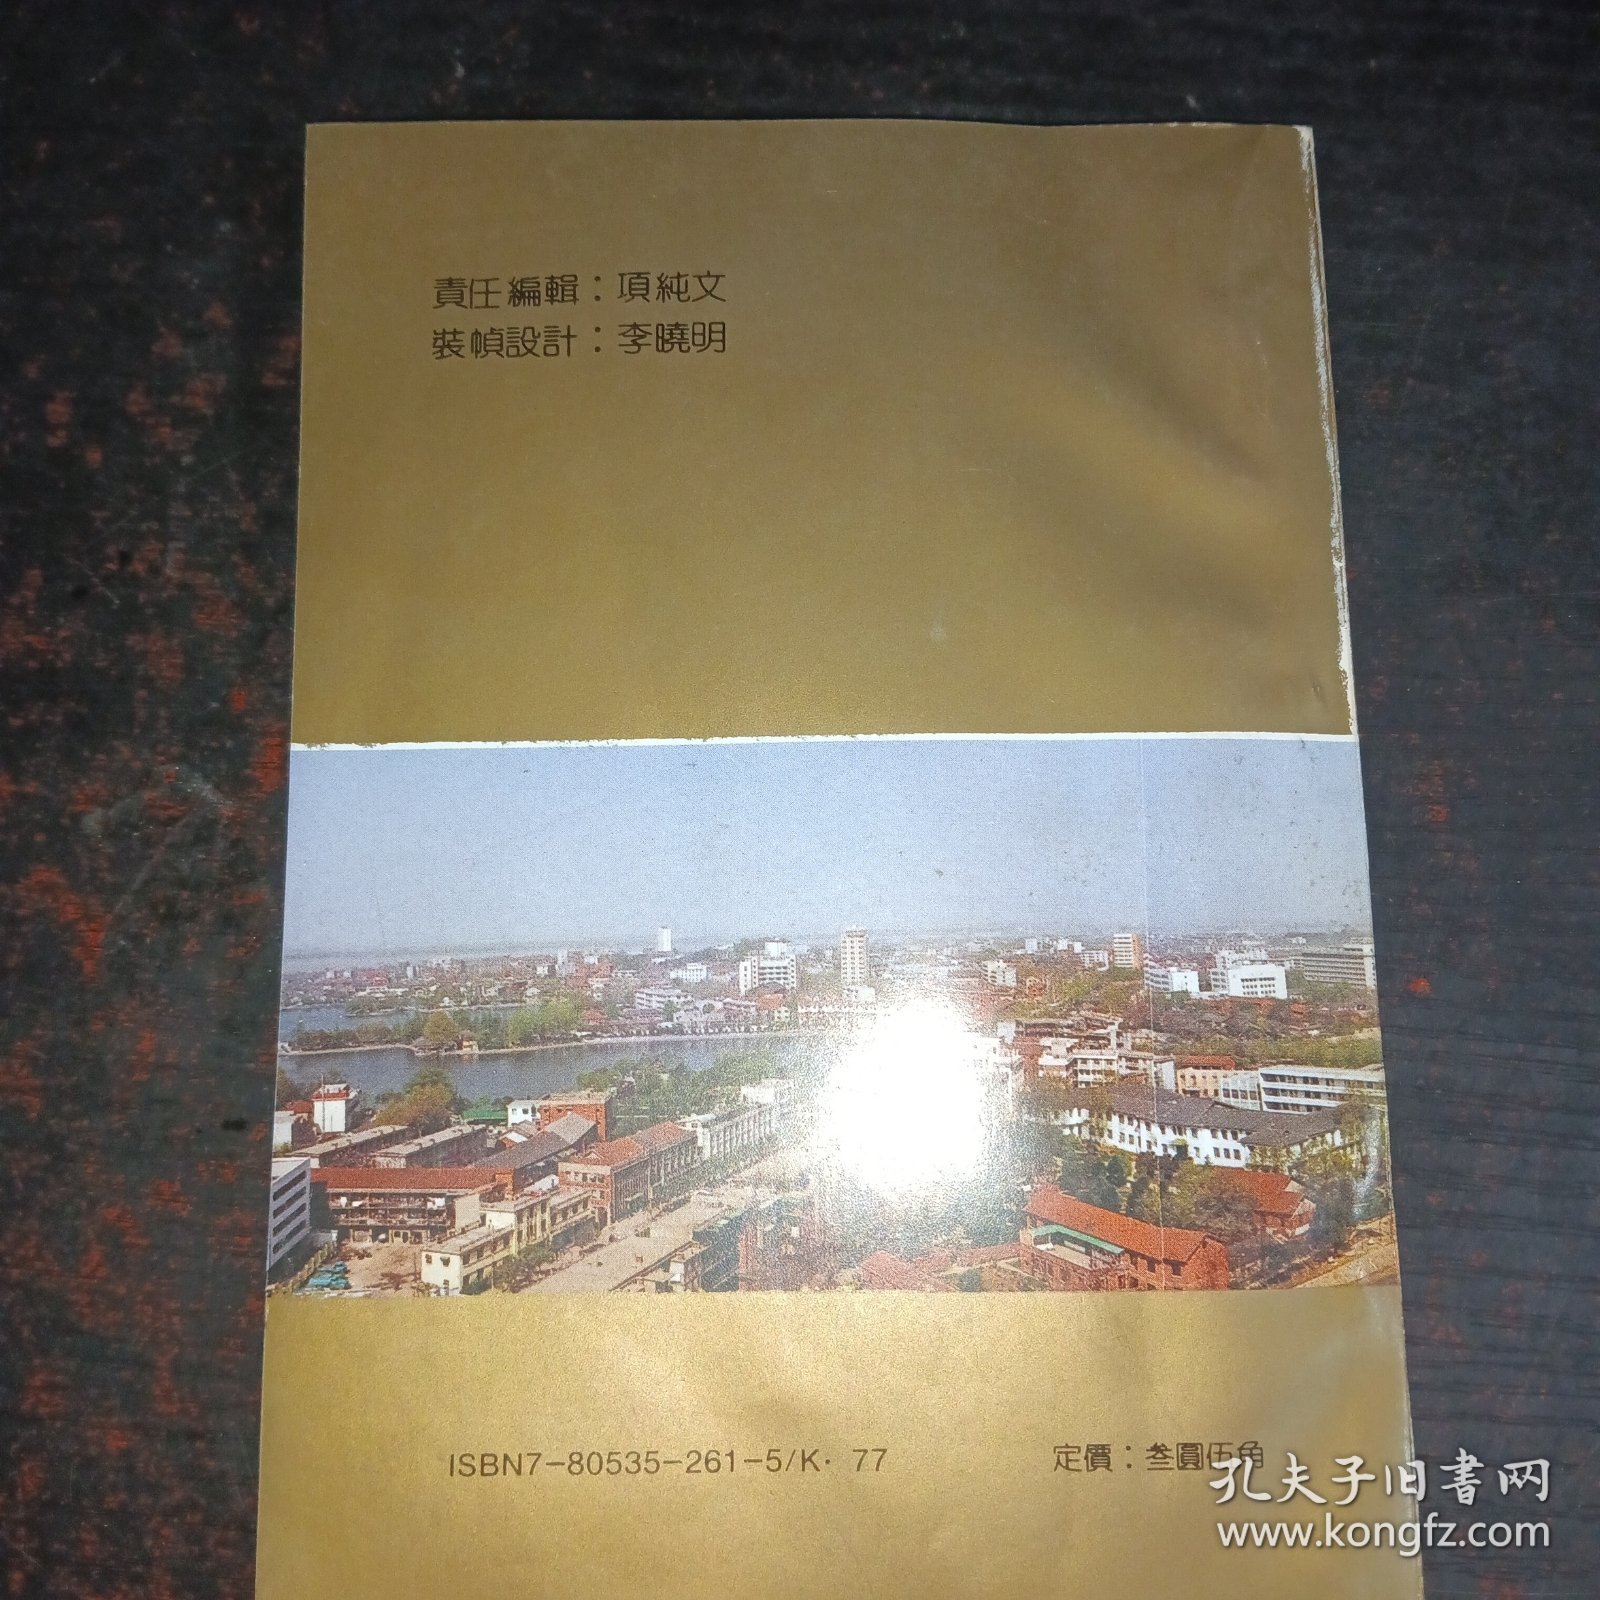 长江明星开放城市——芜湖、。